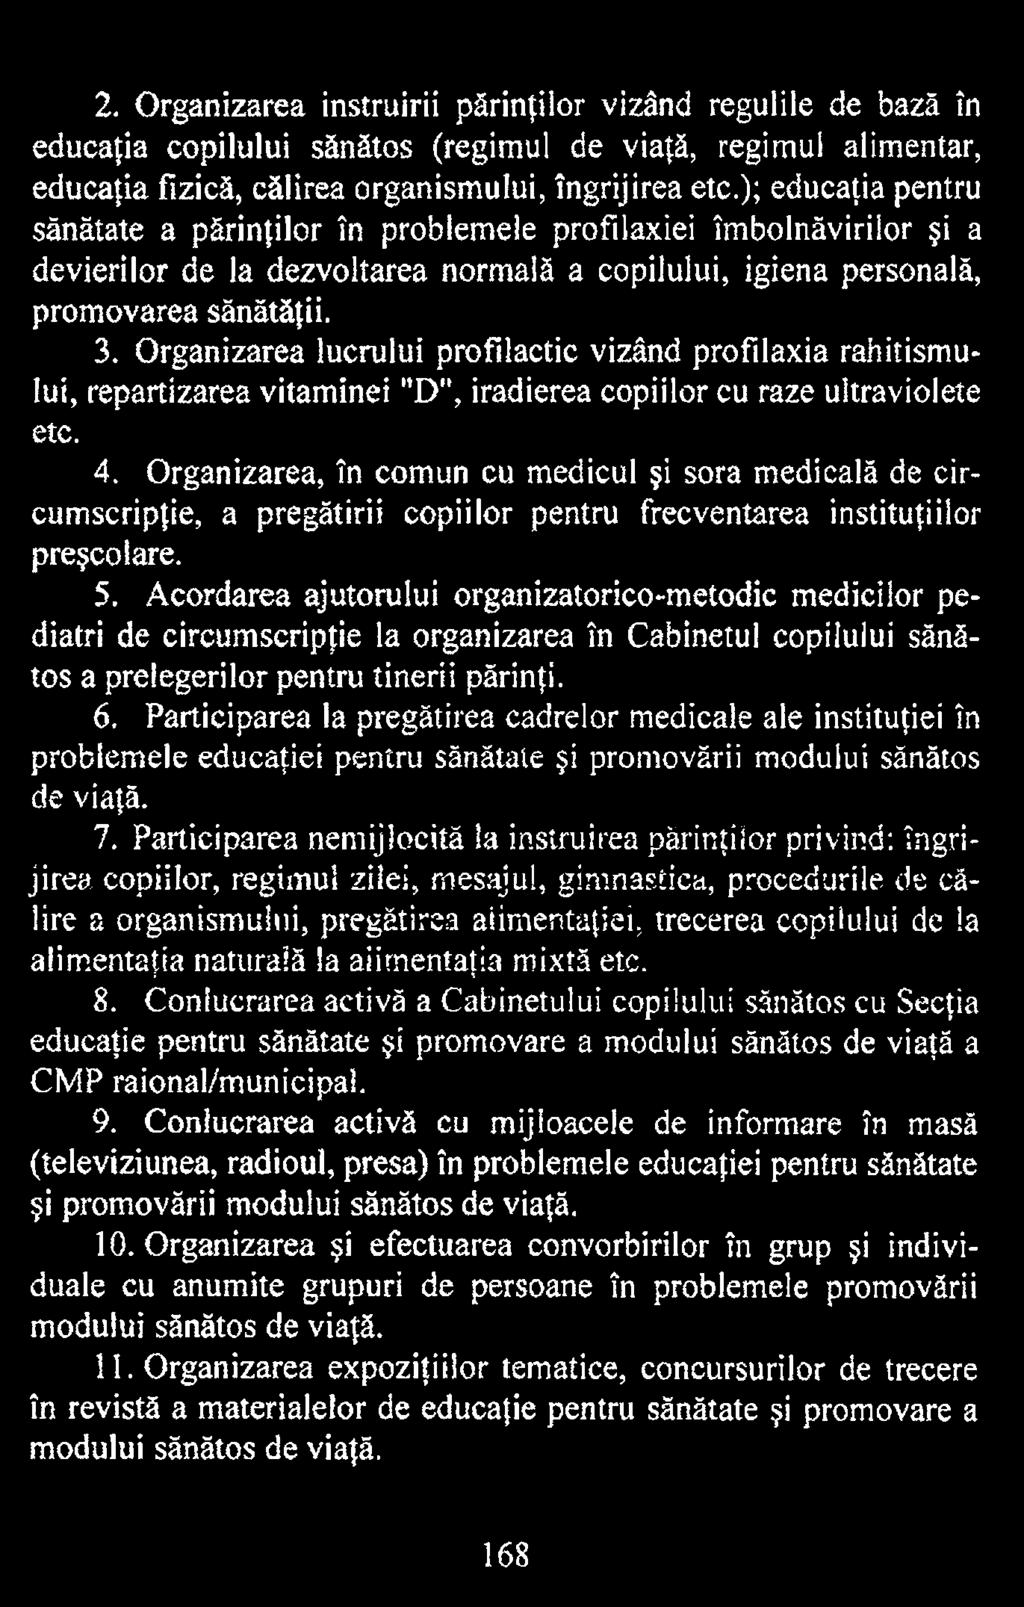 Acordarea ajutorului organizatorico-metodic medicilor pediatri de circumscripţie la organizarea în Cabinetul copilului sănătos a prelegerilor pentru tinerii părinţi. 6.